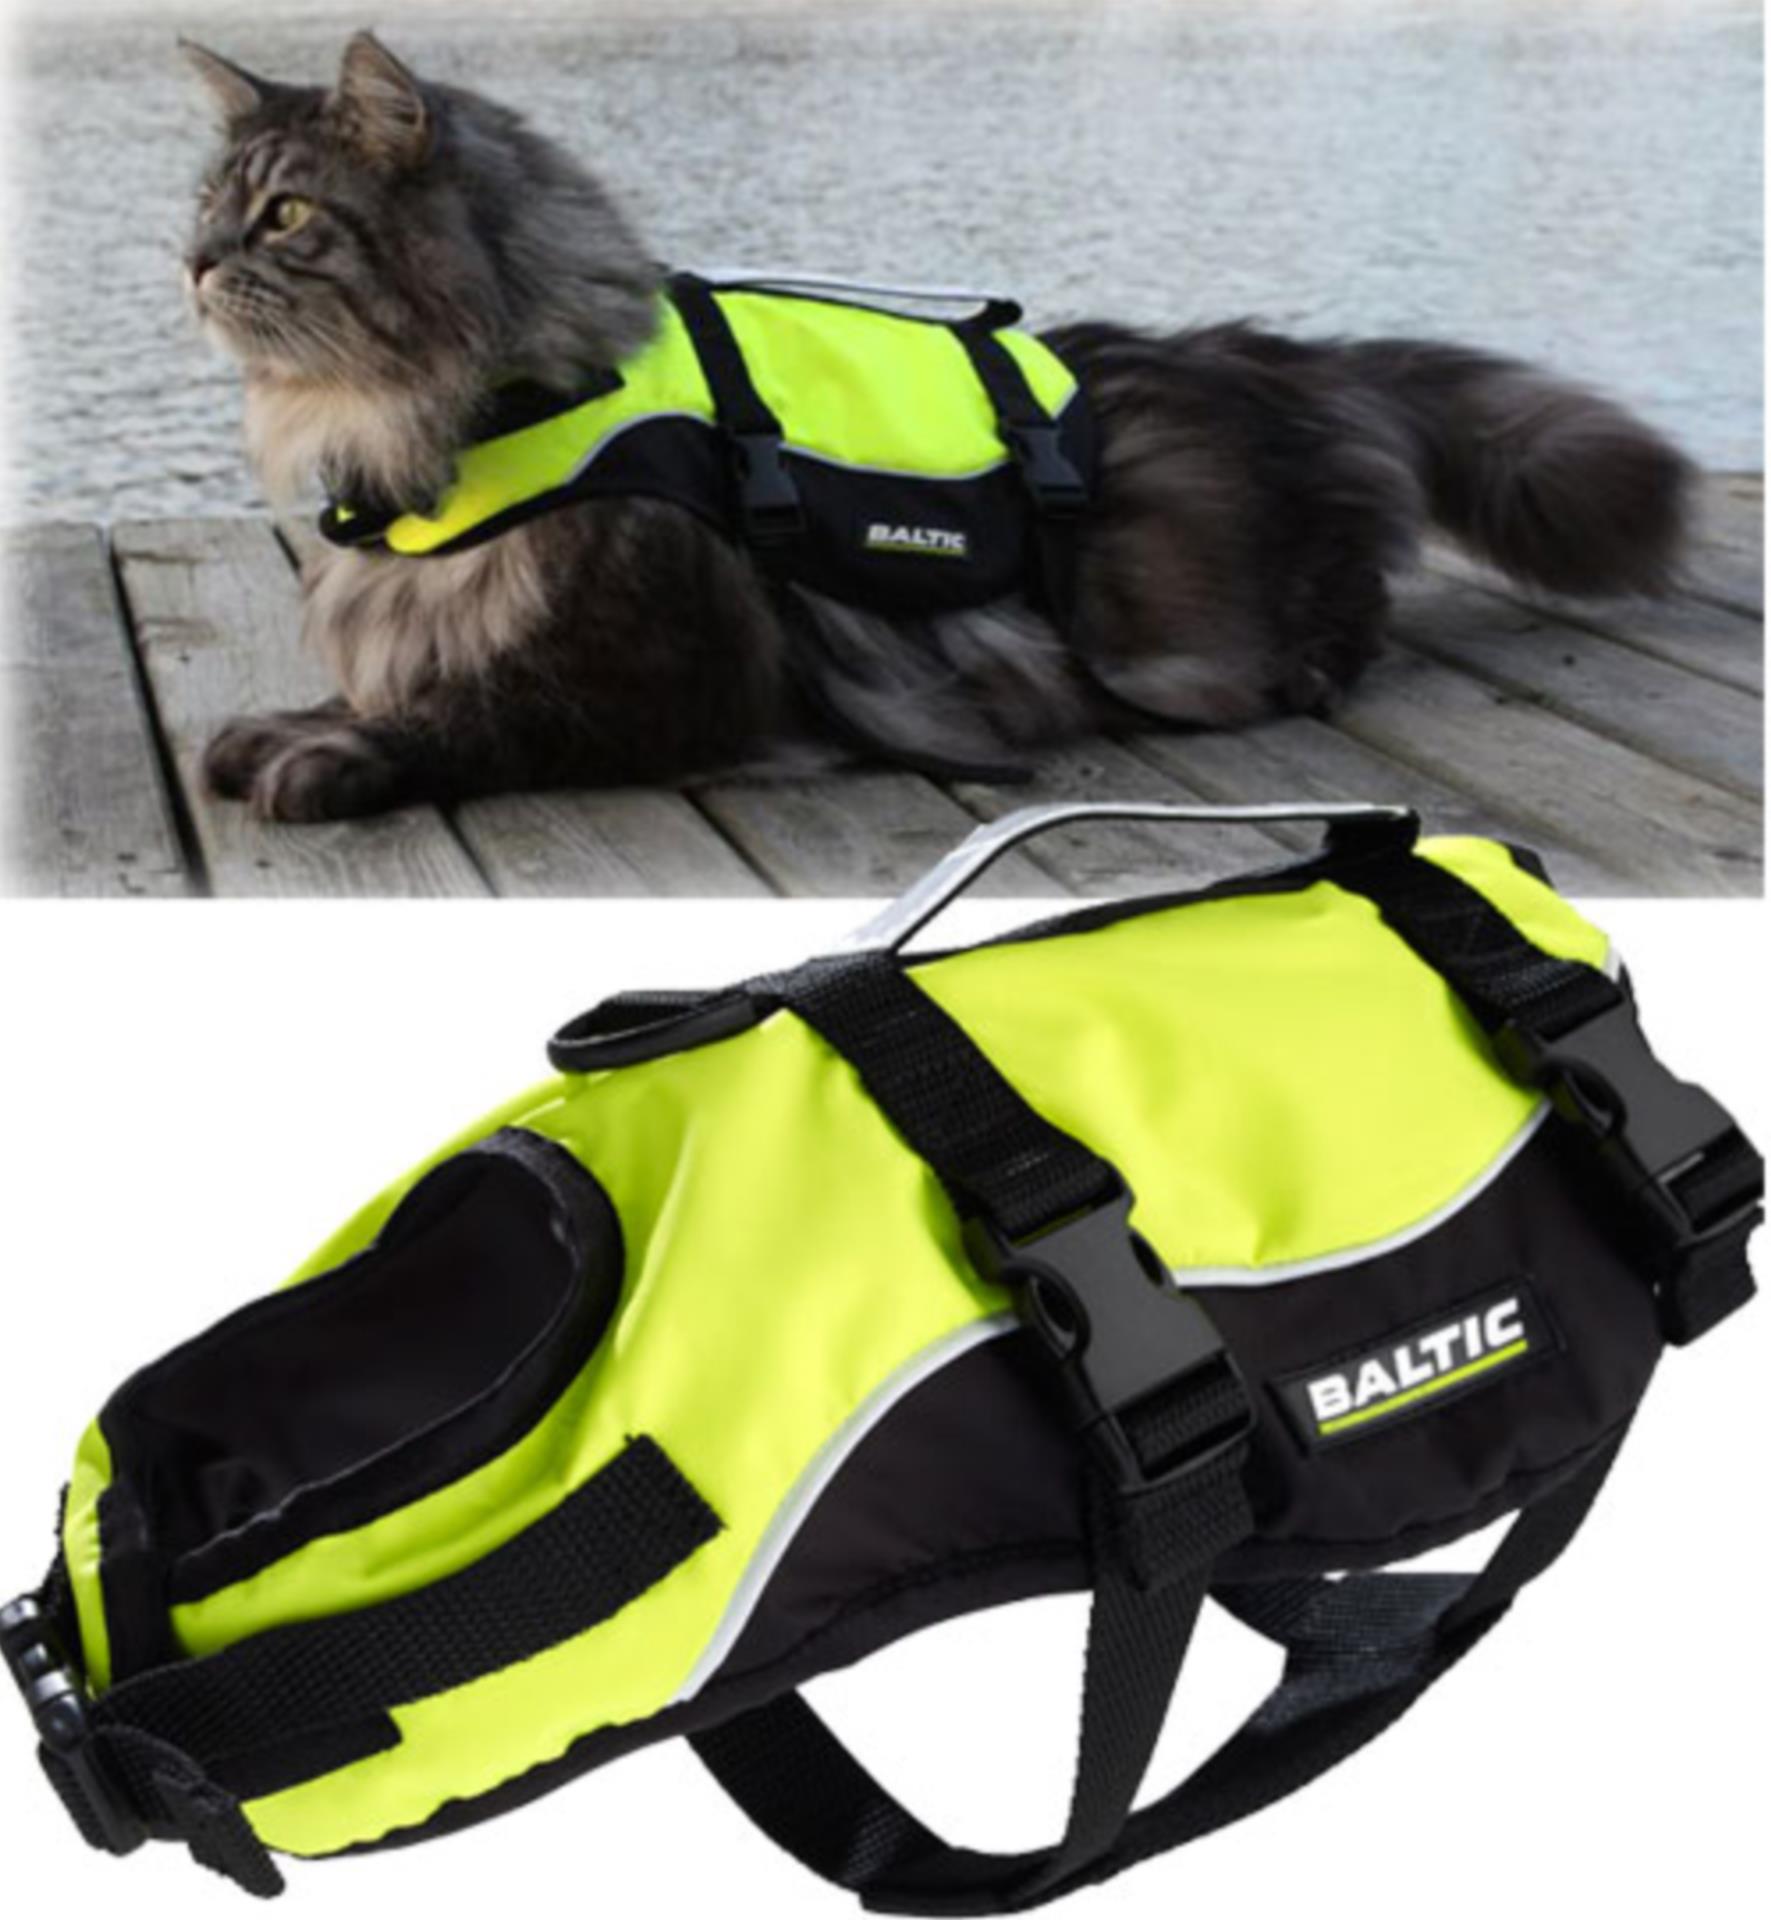 BALTIC Katzen Rettungsweste MAJA neongelb / schwarz, 7 - 10 kg